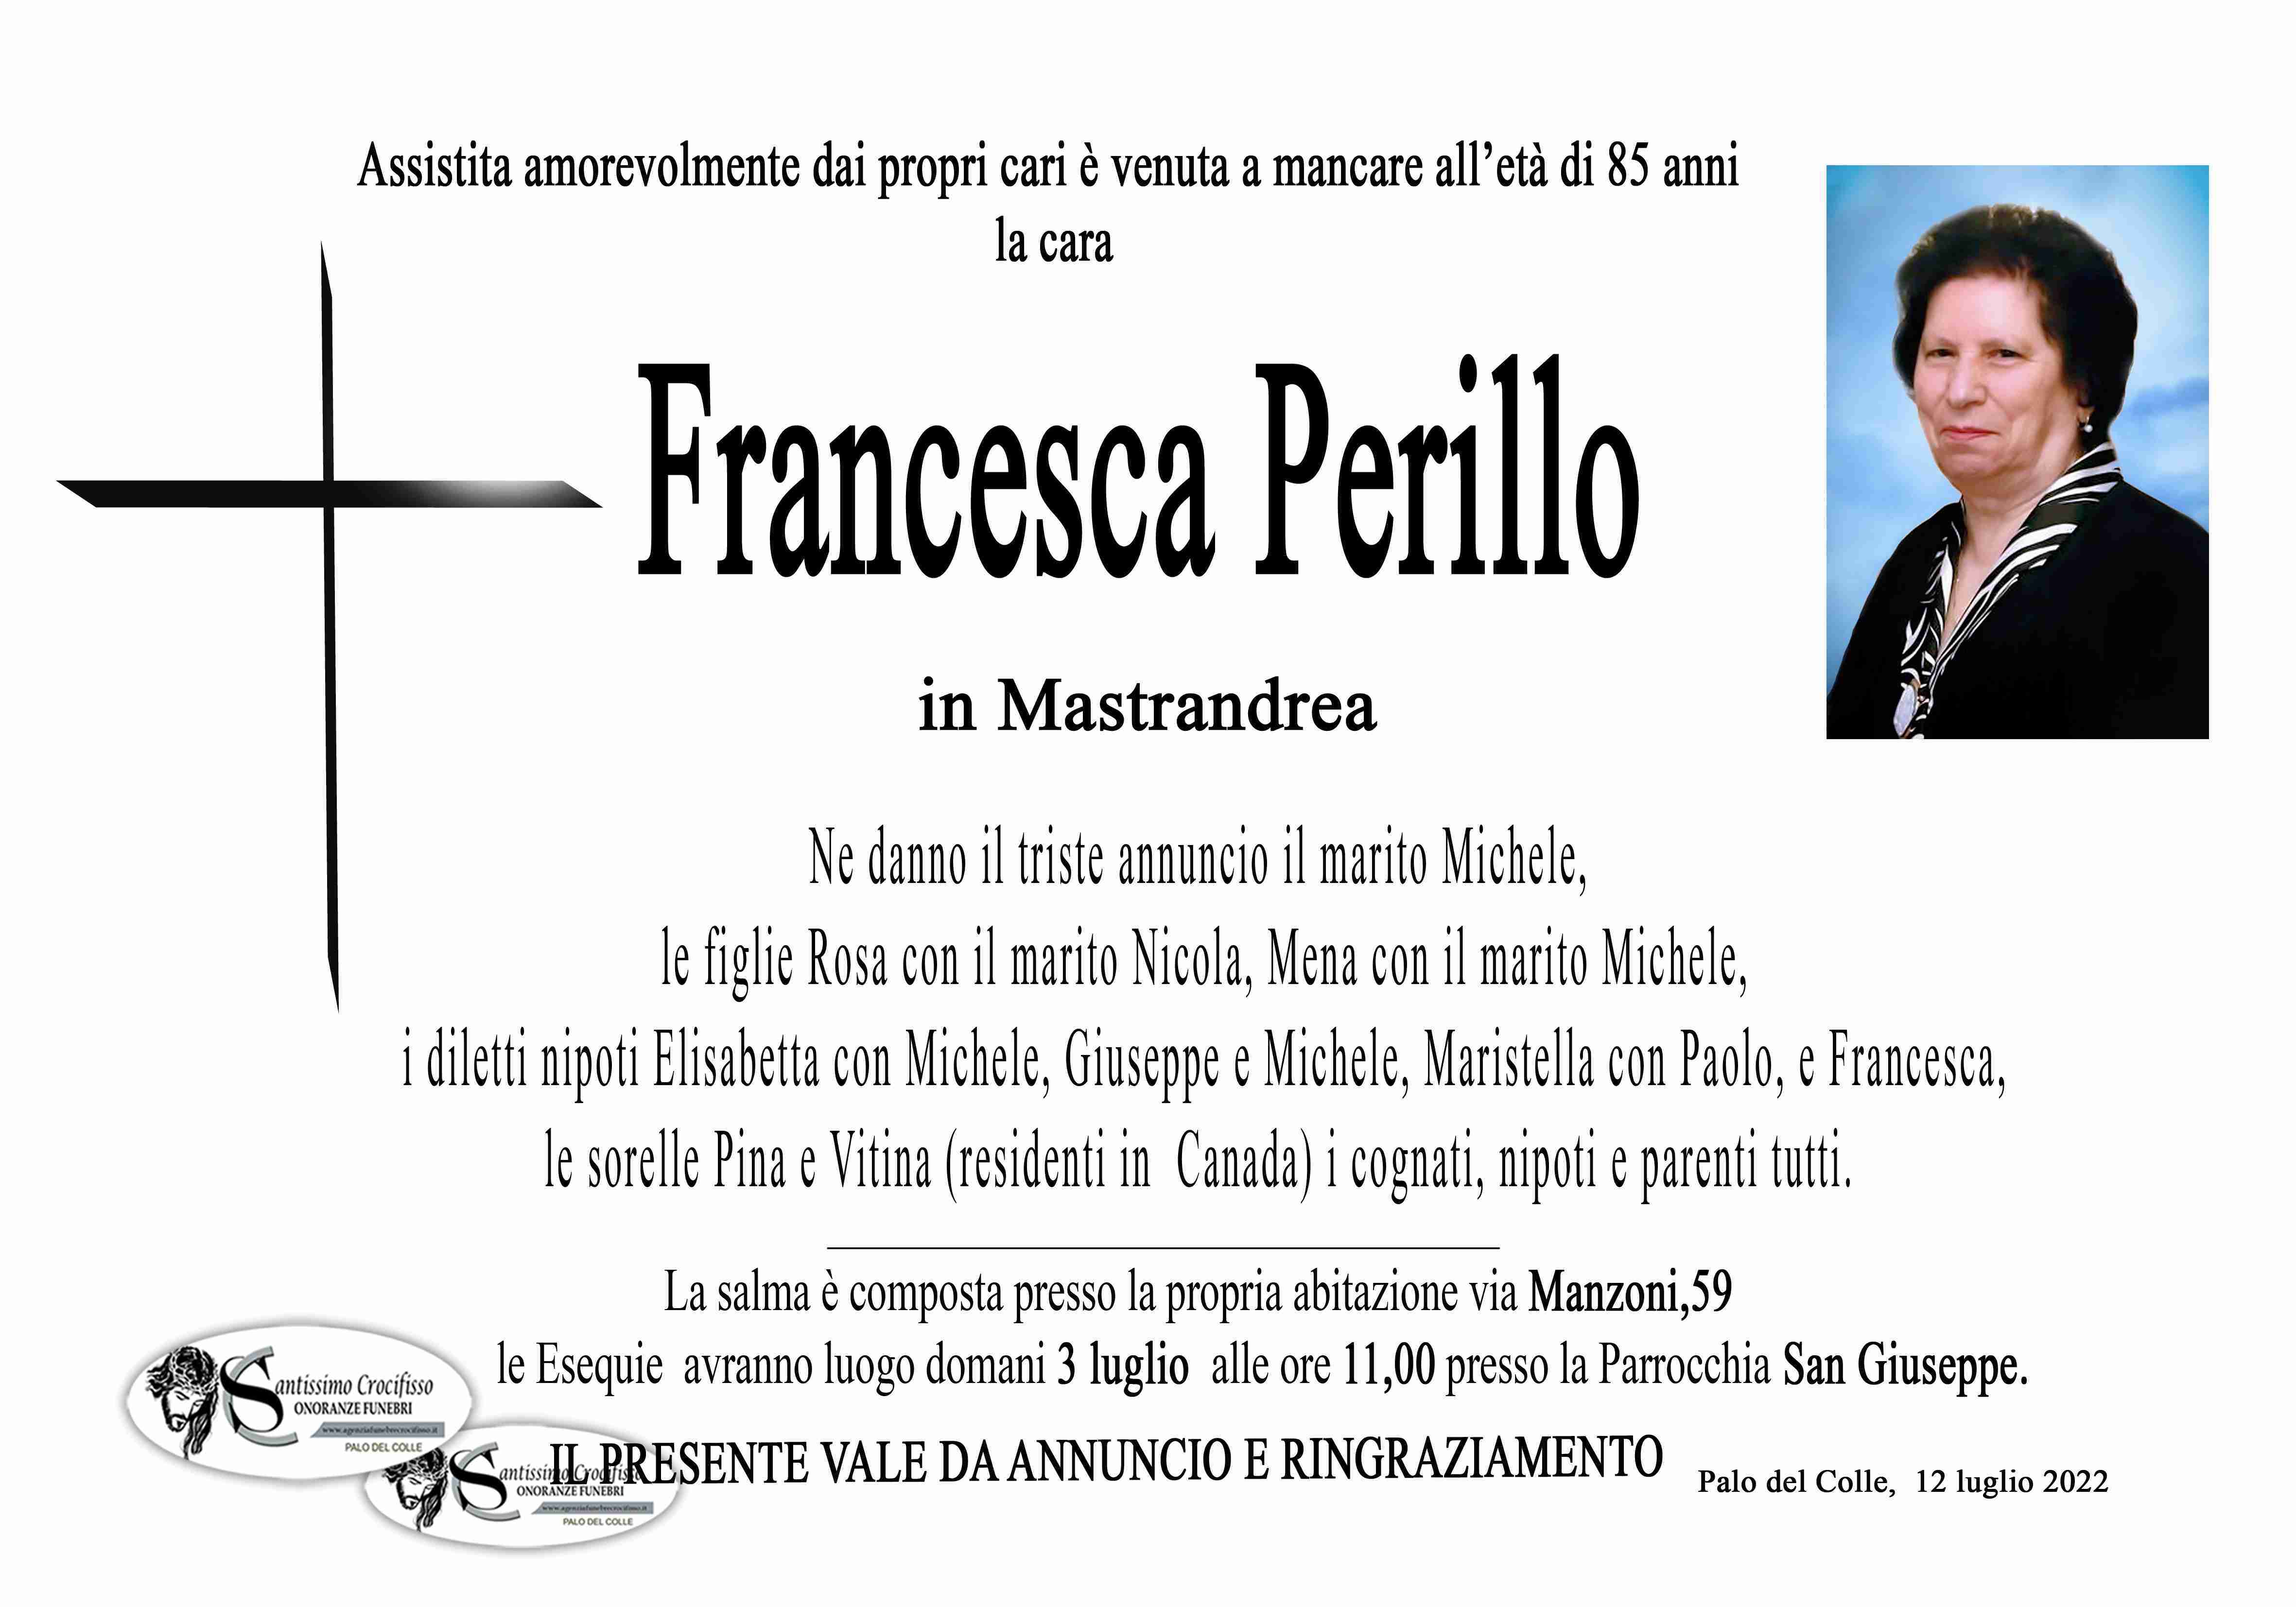 Francesca Perillo